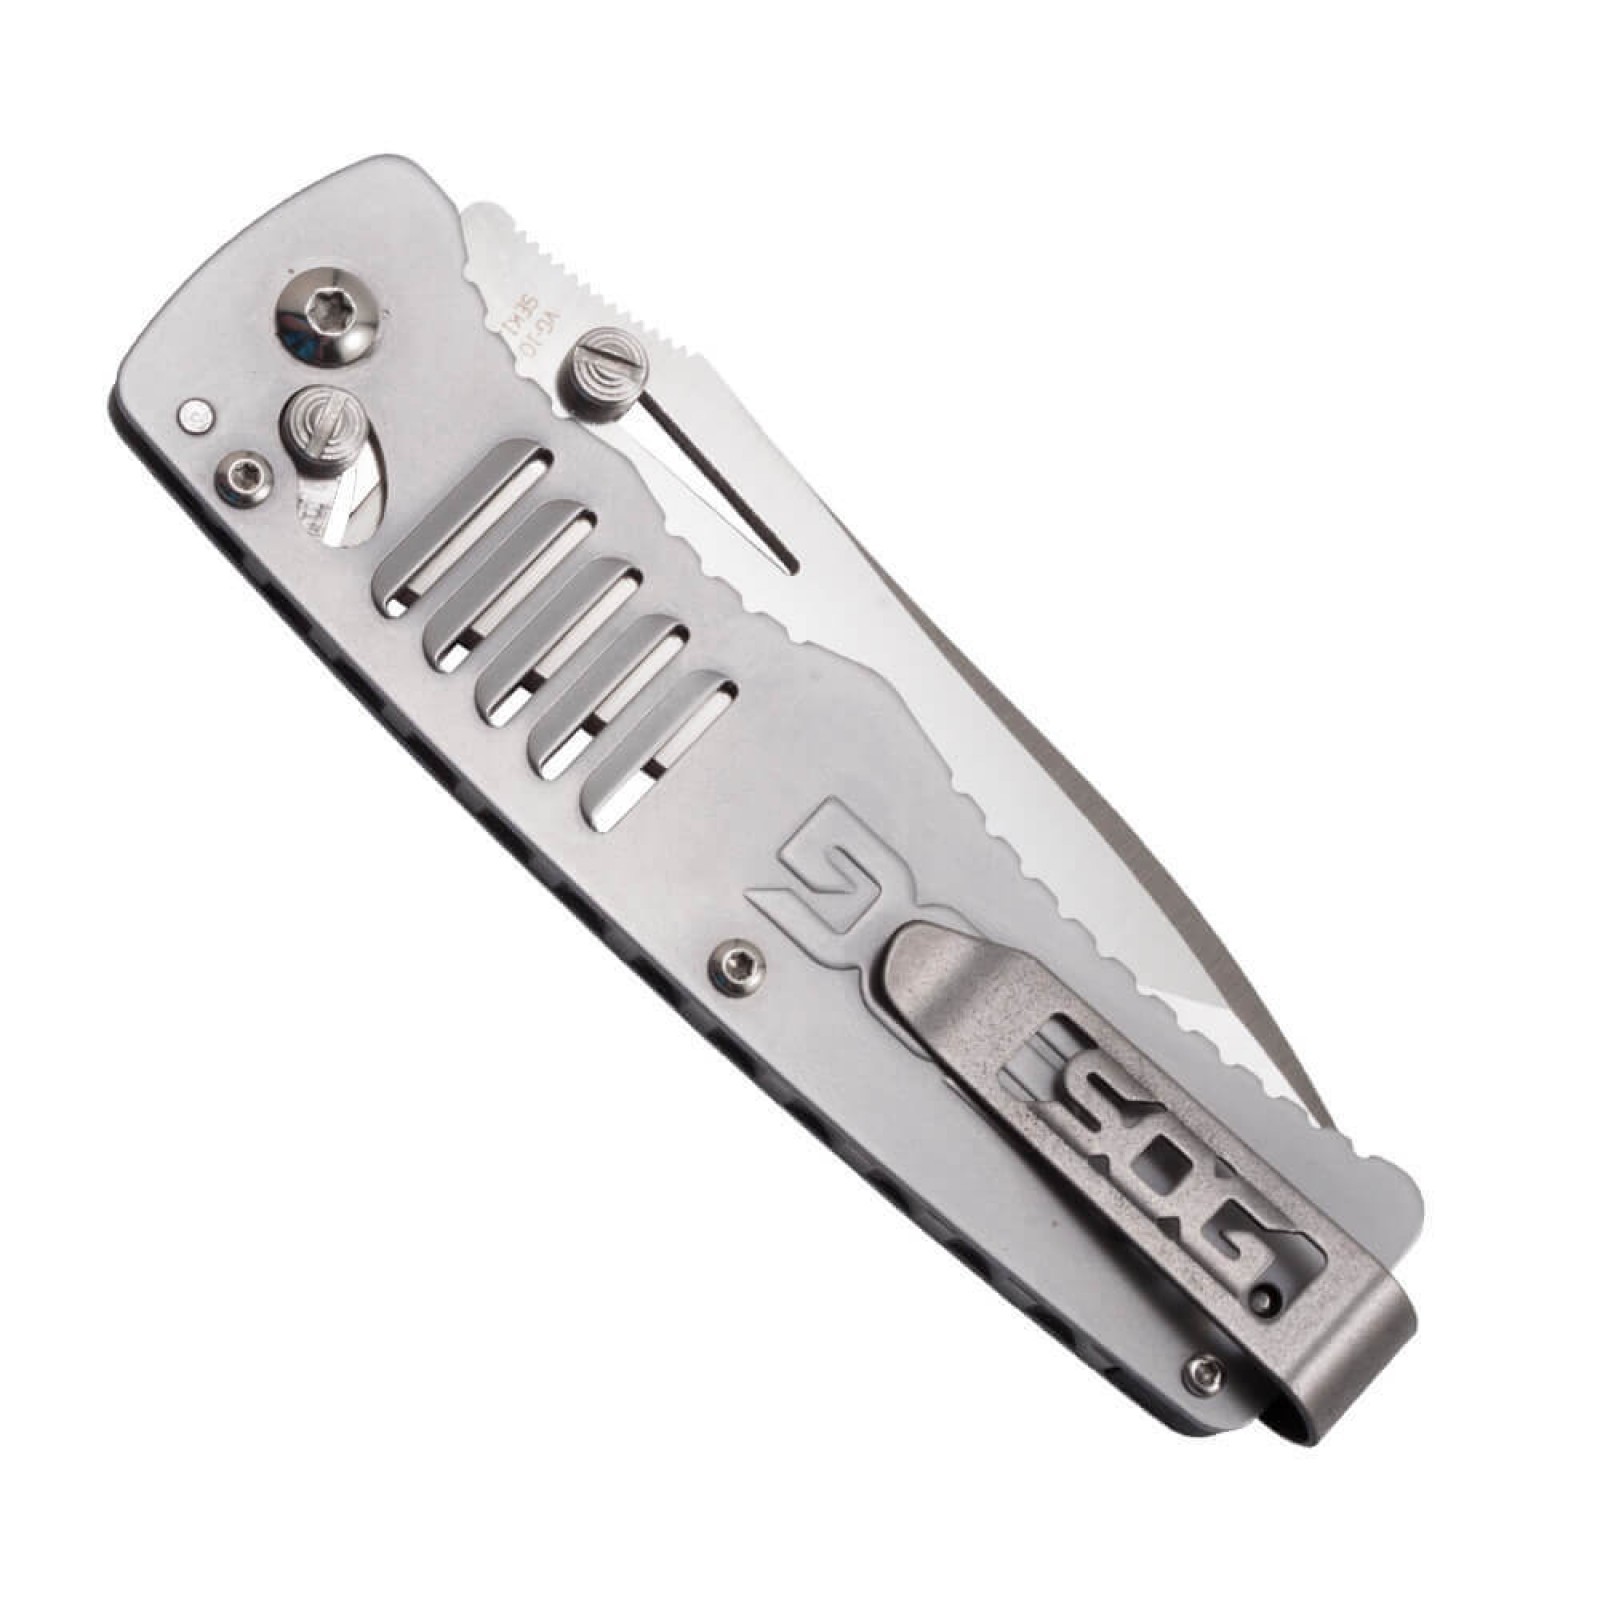 Складной нож Targa Satin - SOG TG1001, сталь VG-10, рукоять нержавеющая сталь, серый - фото 9